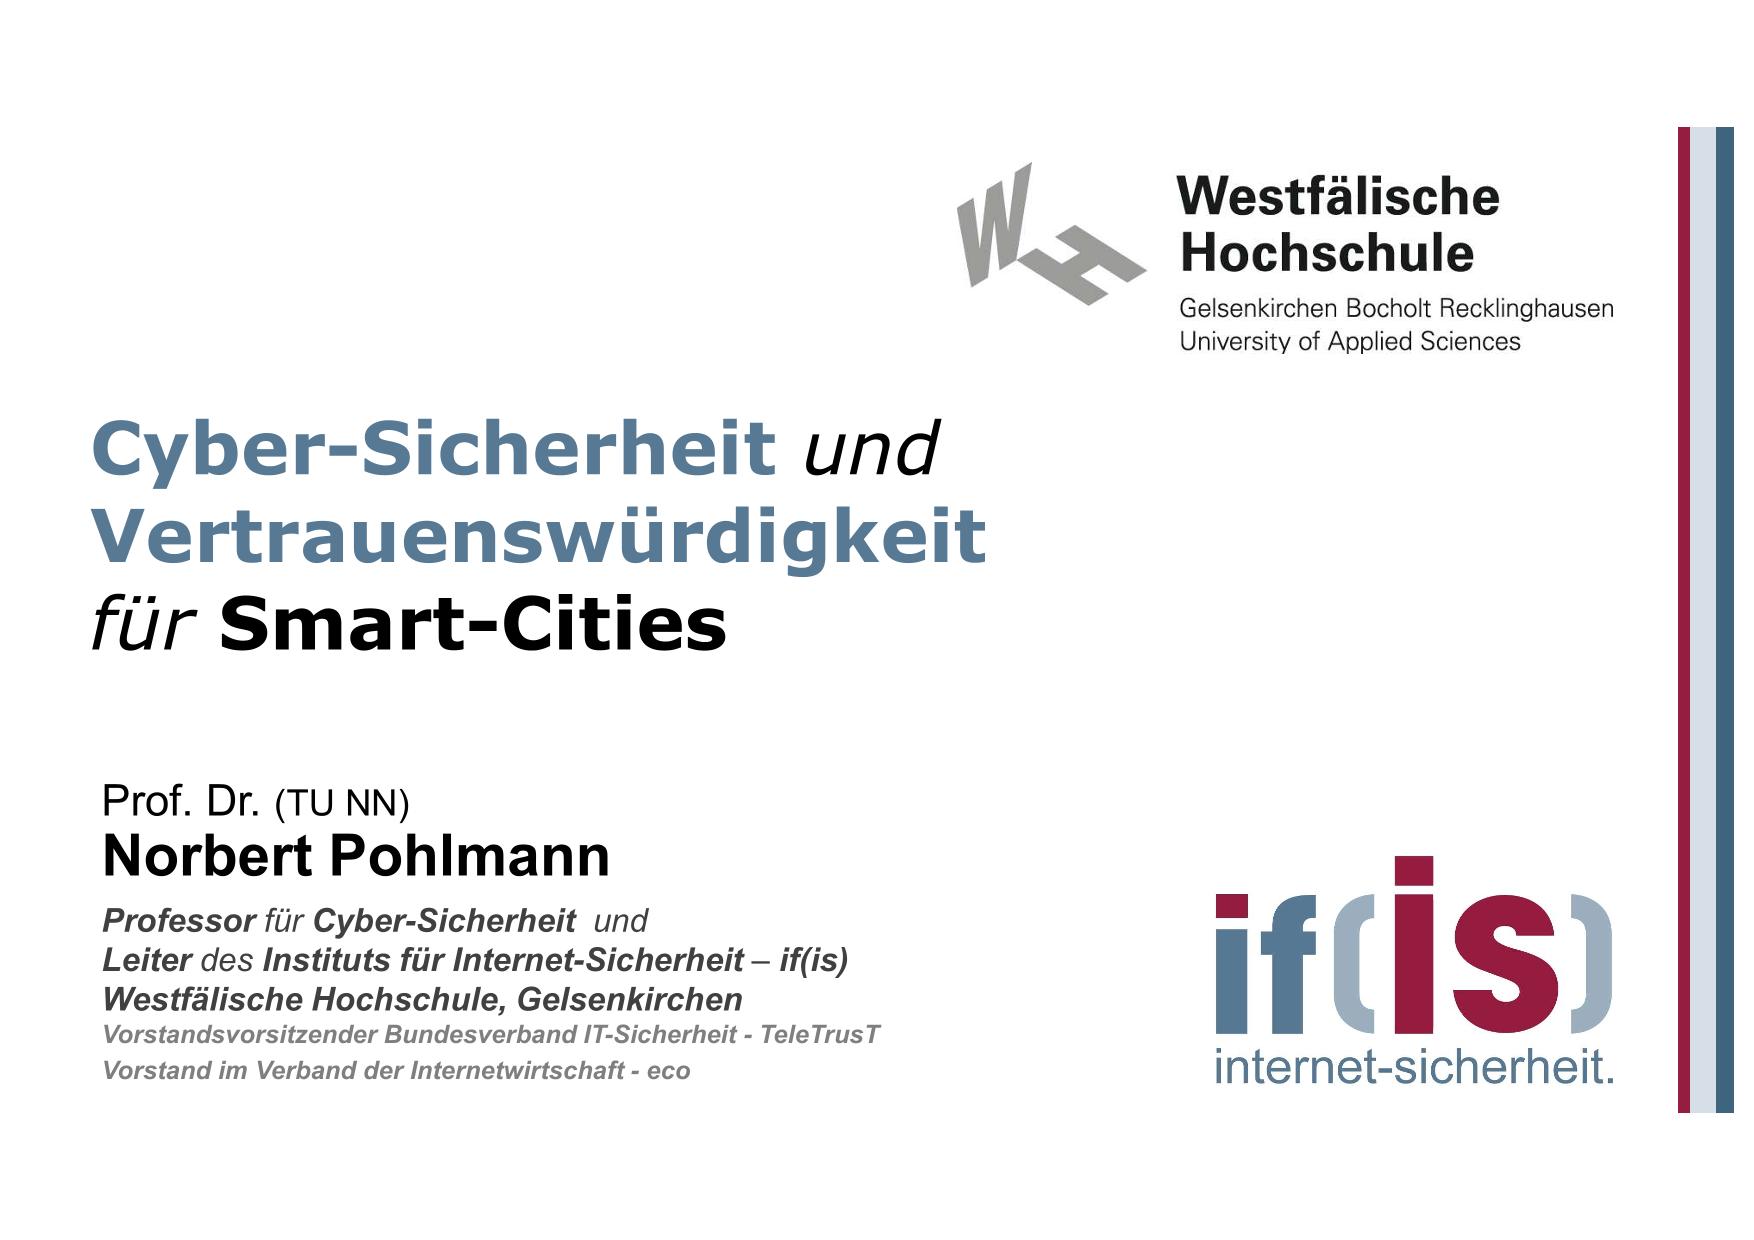 Cyber-Sicherheit und Vertrauenswürdigkeit für Smart-Cities